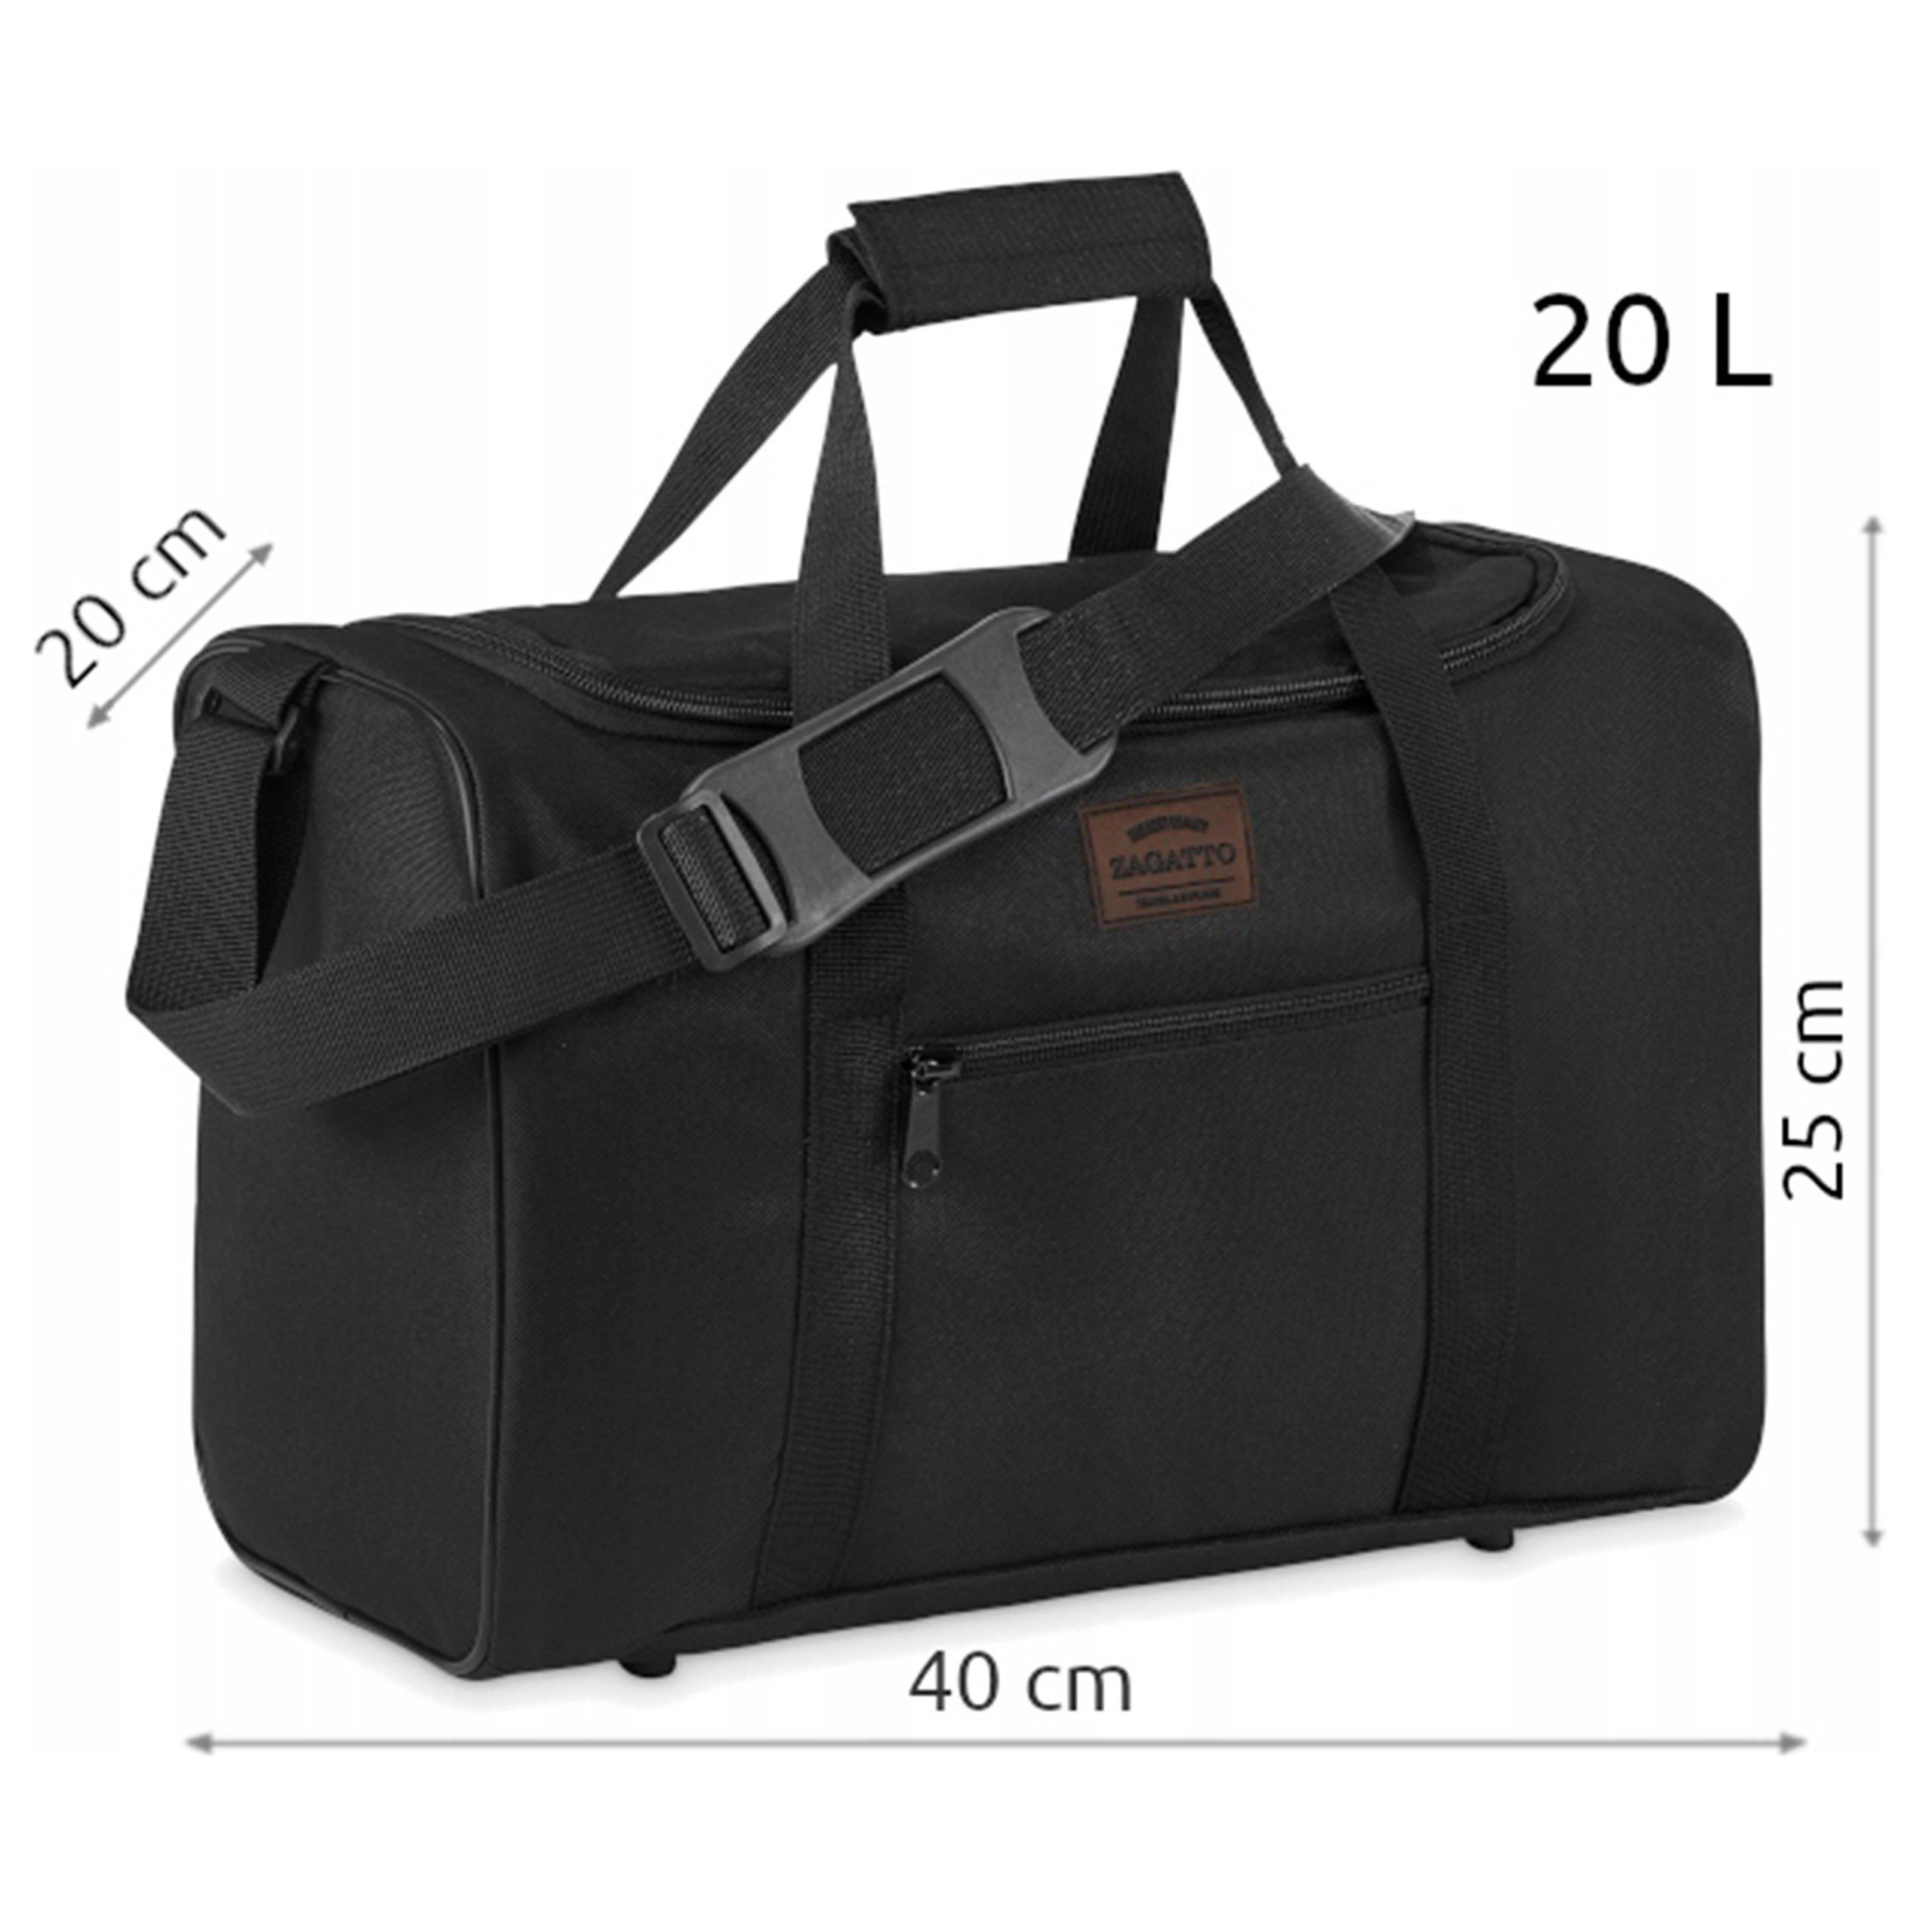 Schutzfüßen Reisetasche Schwarze Reisetasche Flugzeug für 40x20x25cm Sarcia.eu mit Zagatto